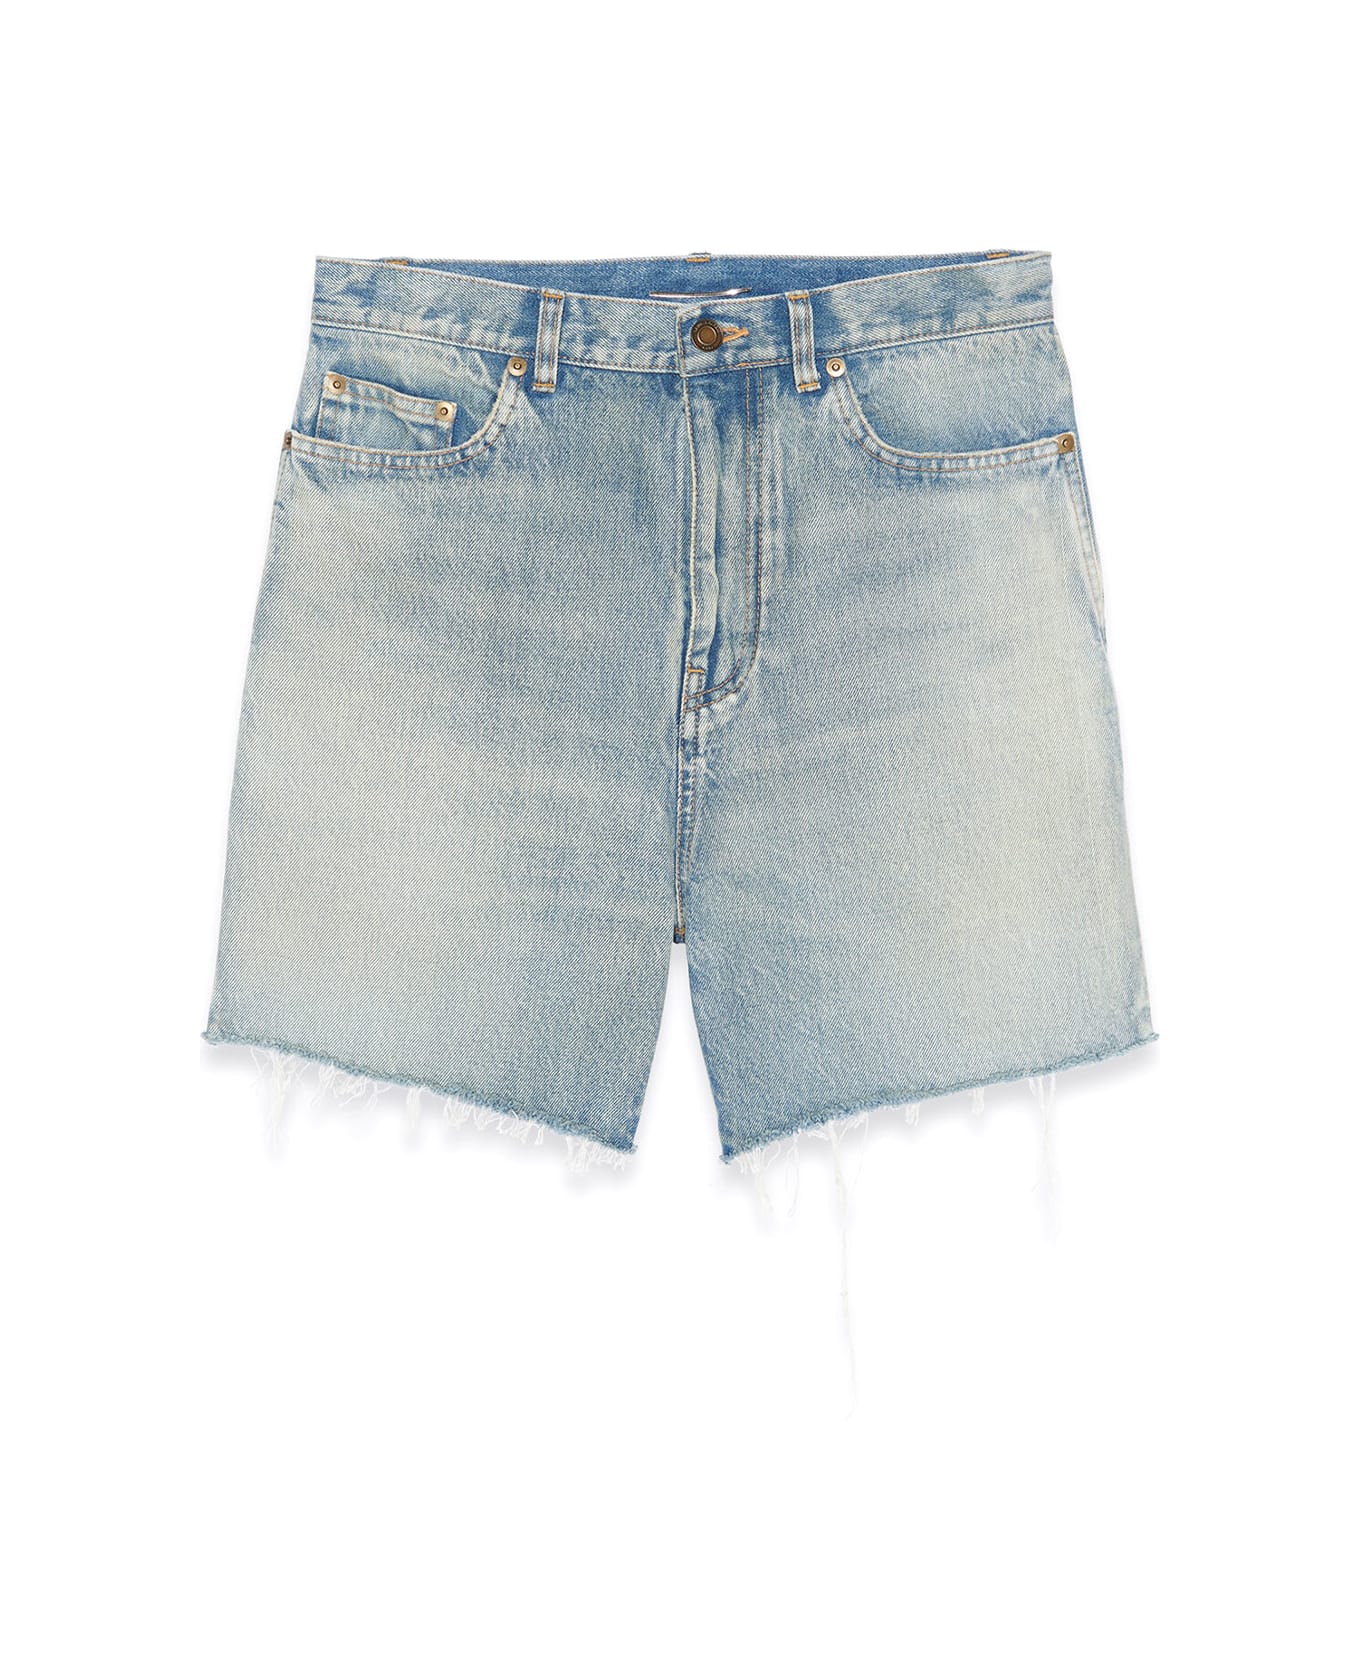 Saint Laurent Denim Shorts In Cotton - BLUE